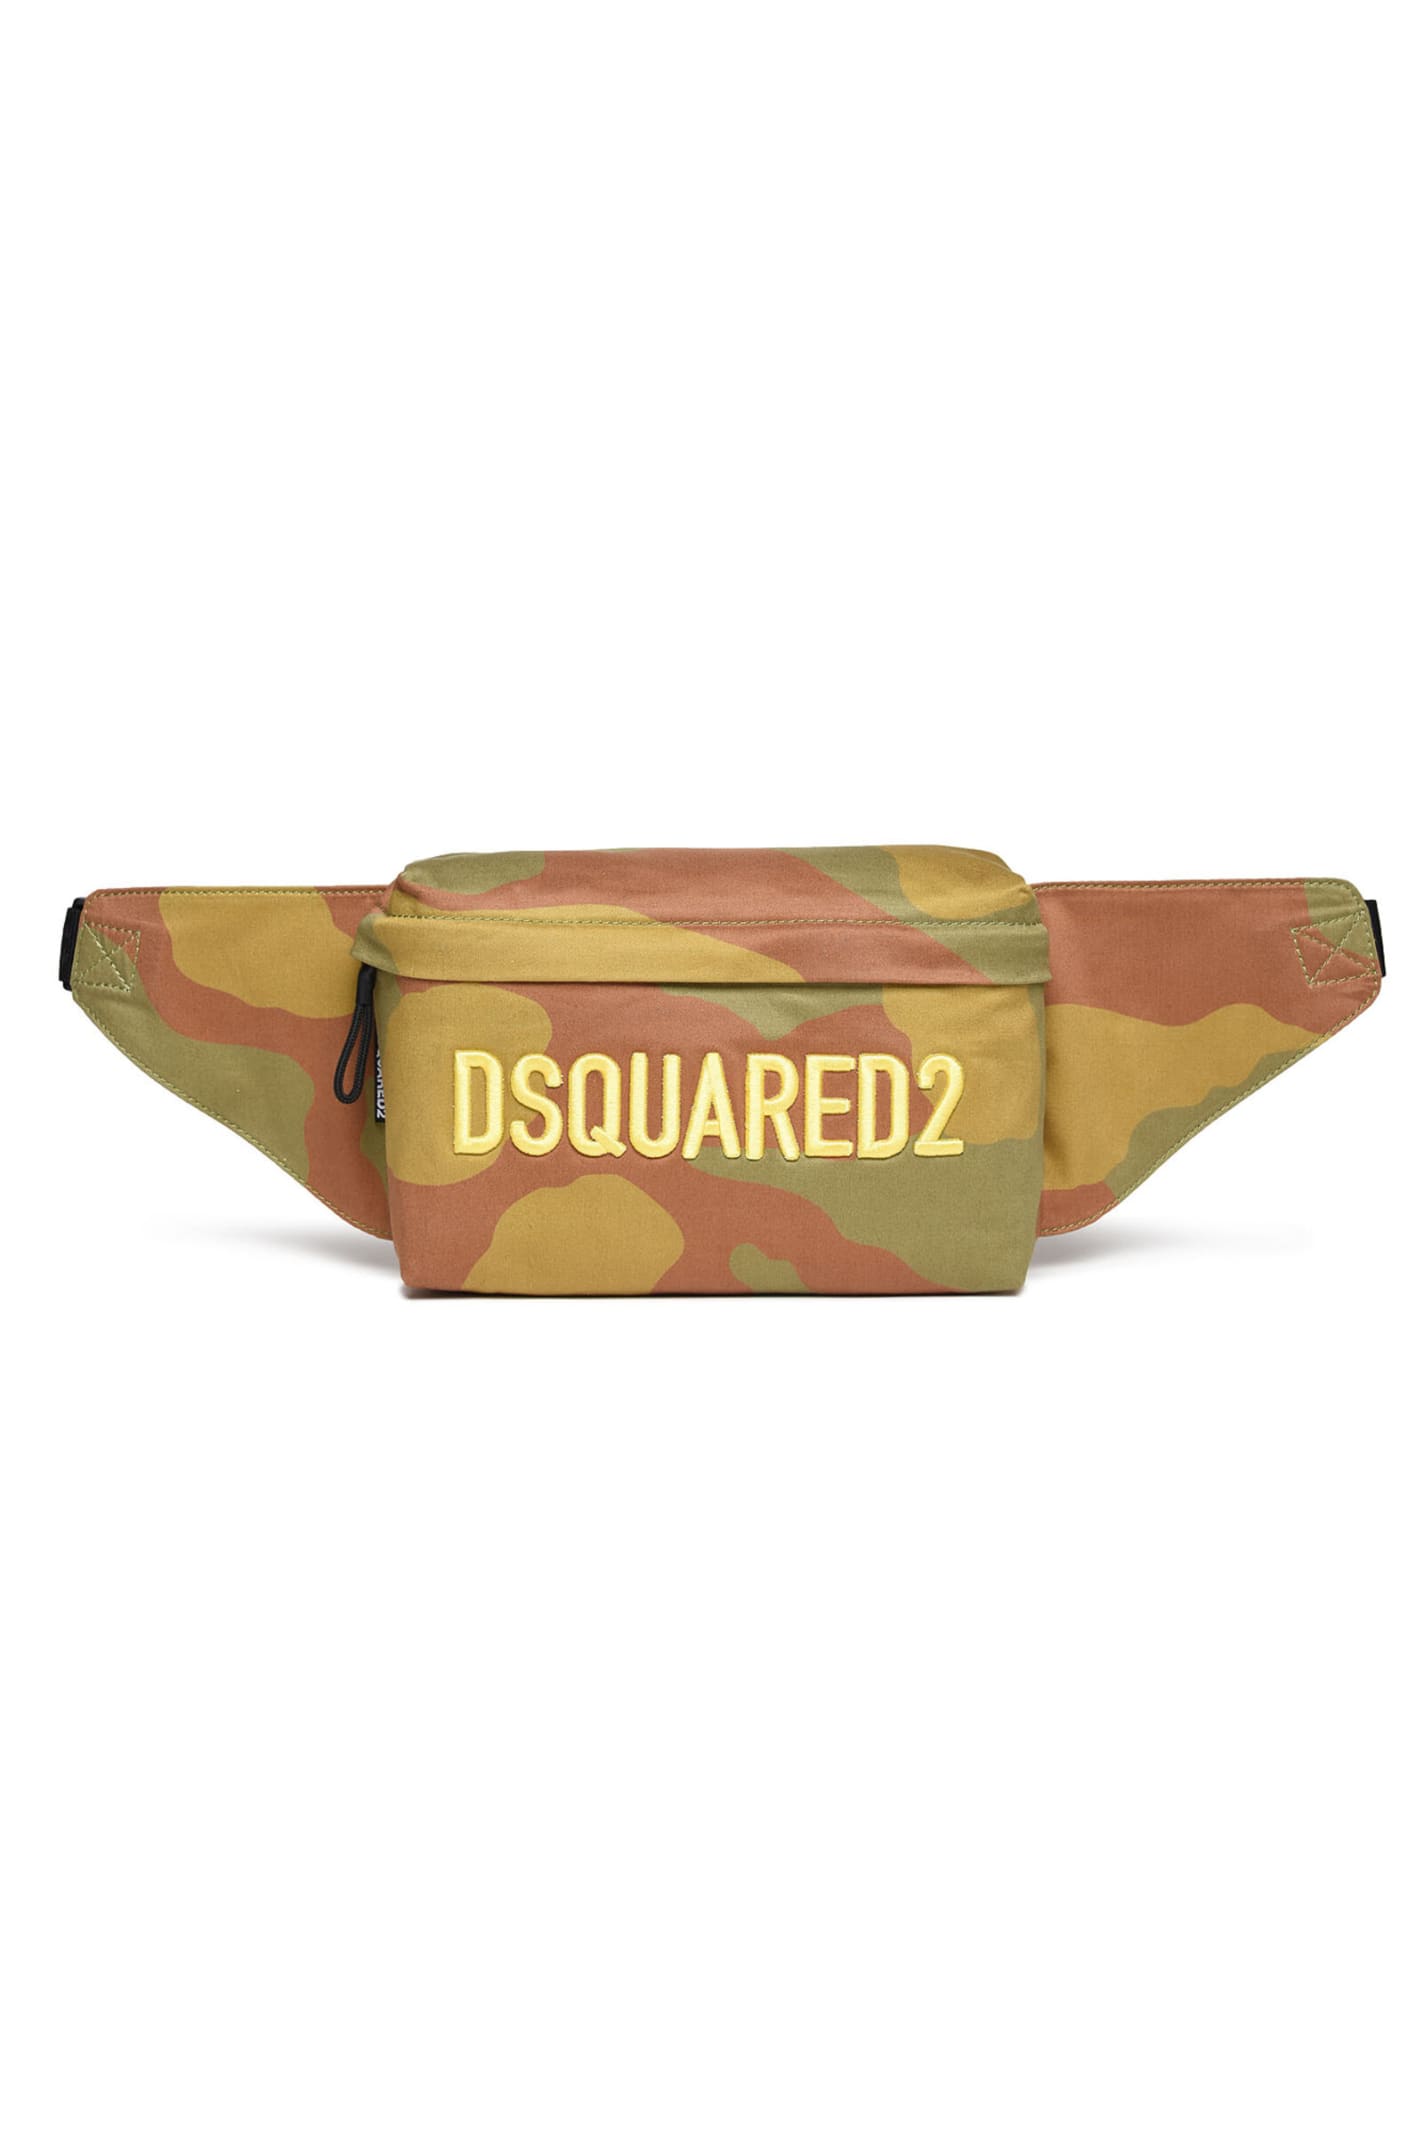 Dsquared2 D2w74u Bags Dsquared